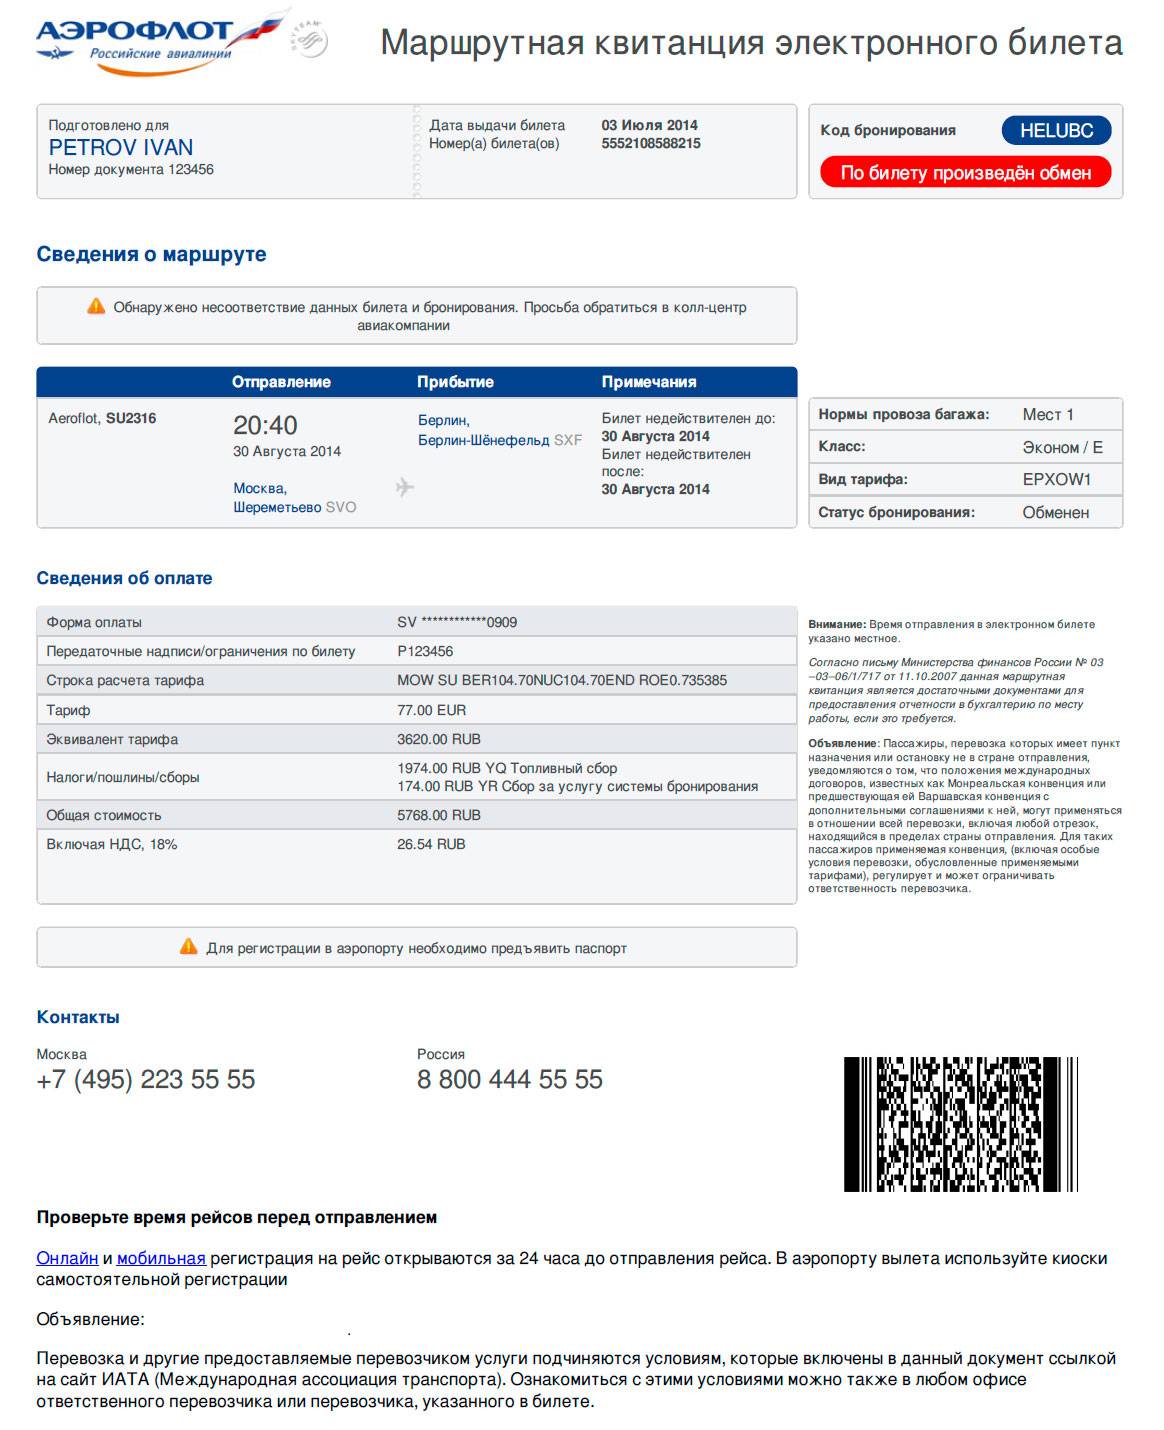 Уральские авиалинии: возврат билета, обмен электронных на другую дату вылета, как поменять или сдать, купленные по интернету на самолет